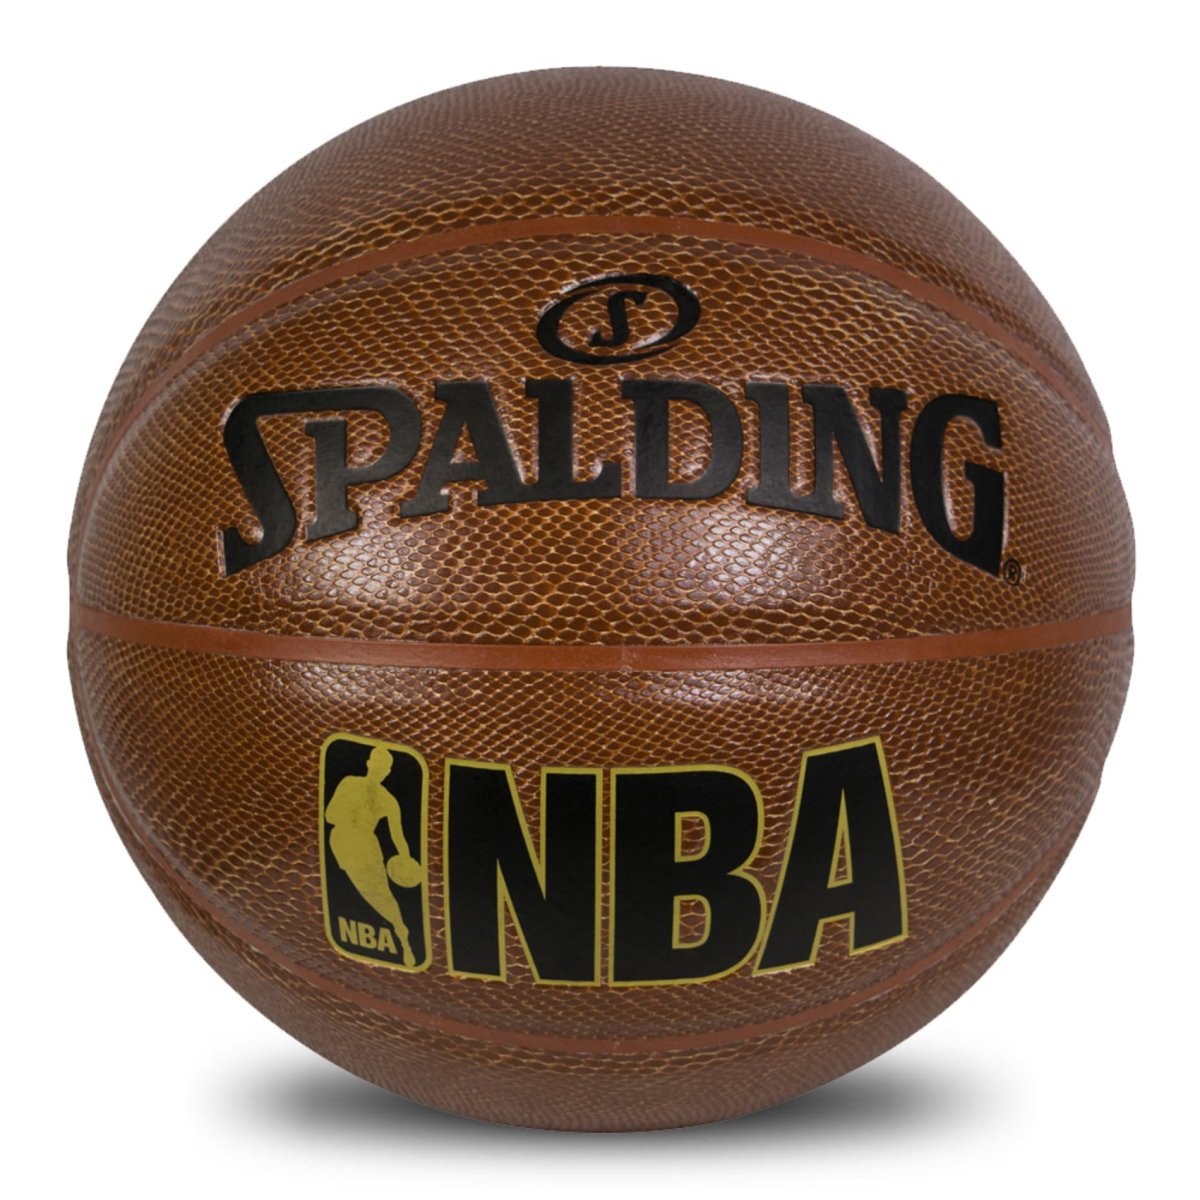 Баскетбольный мяч Спалдинг НБА